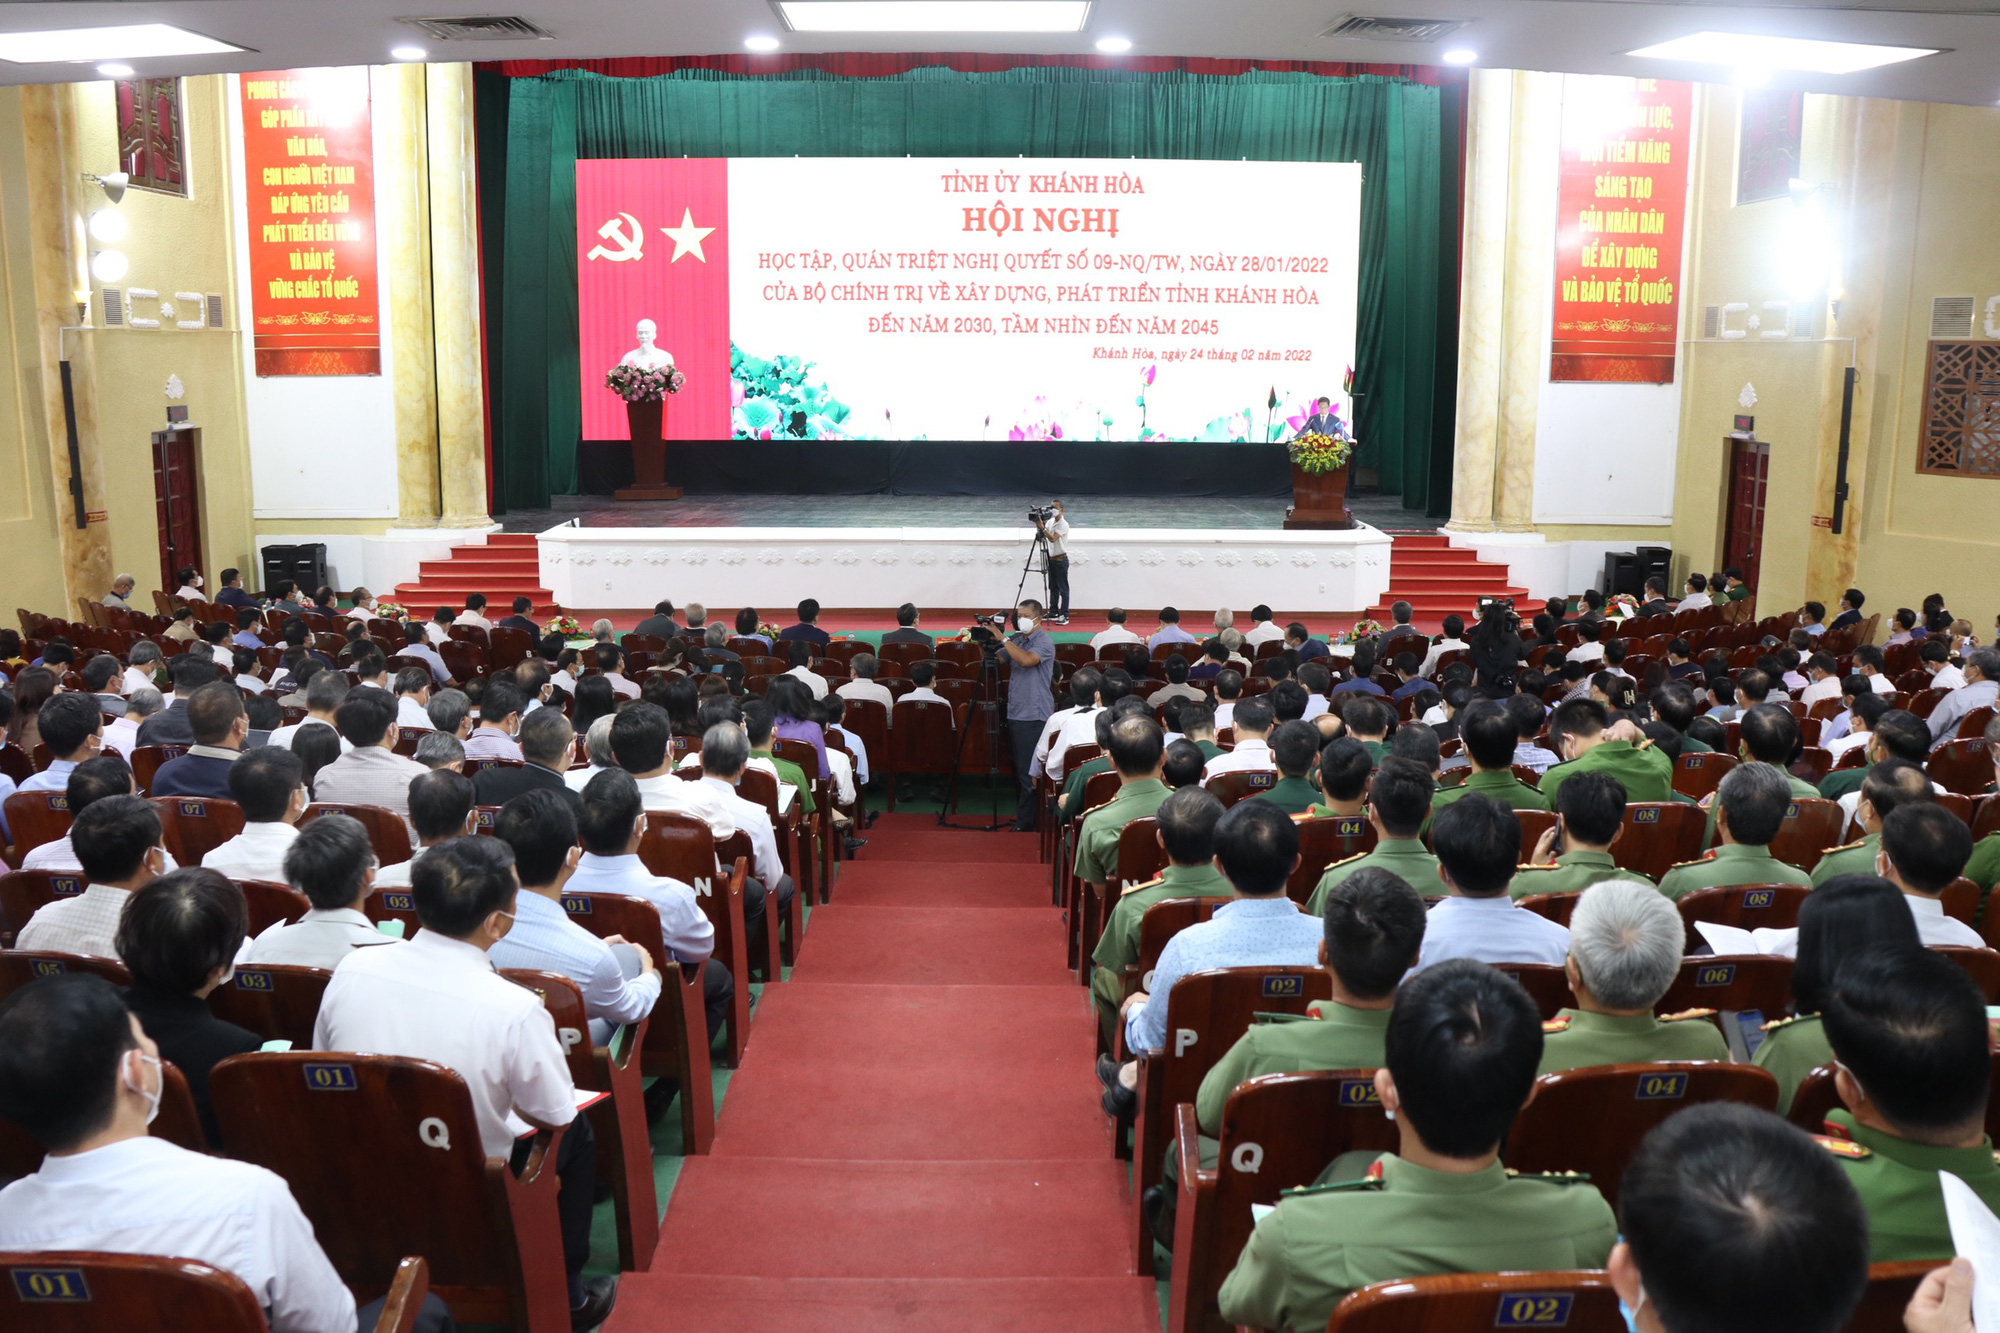 Trưởng Ban Kinh tế TƯ Trần Tuấn Anh chỉ đạo Hội nghị xây dựng, phát triển tỉnh Khánh Hòa - Ảnh 3.